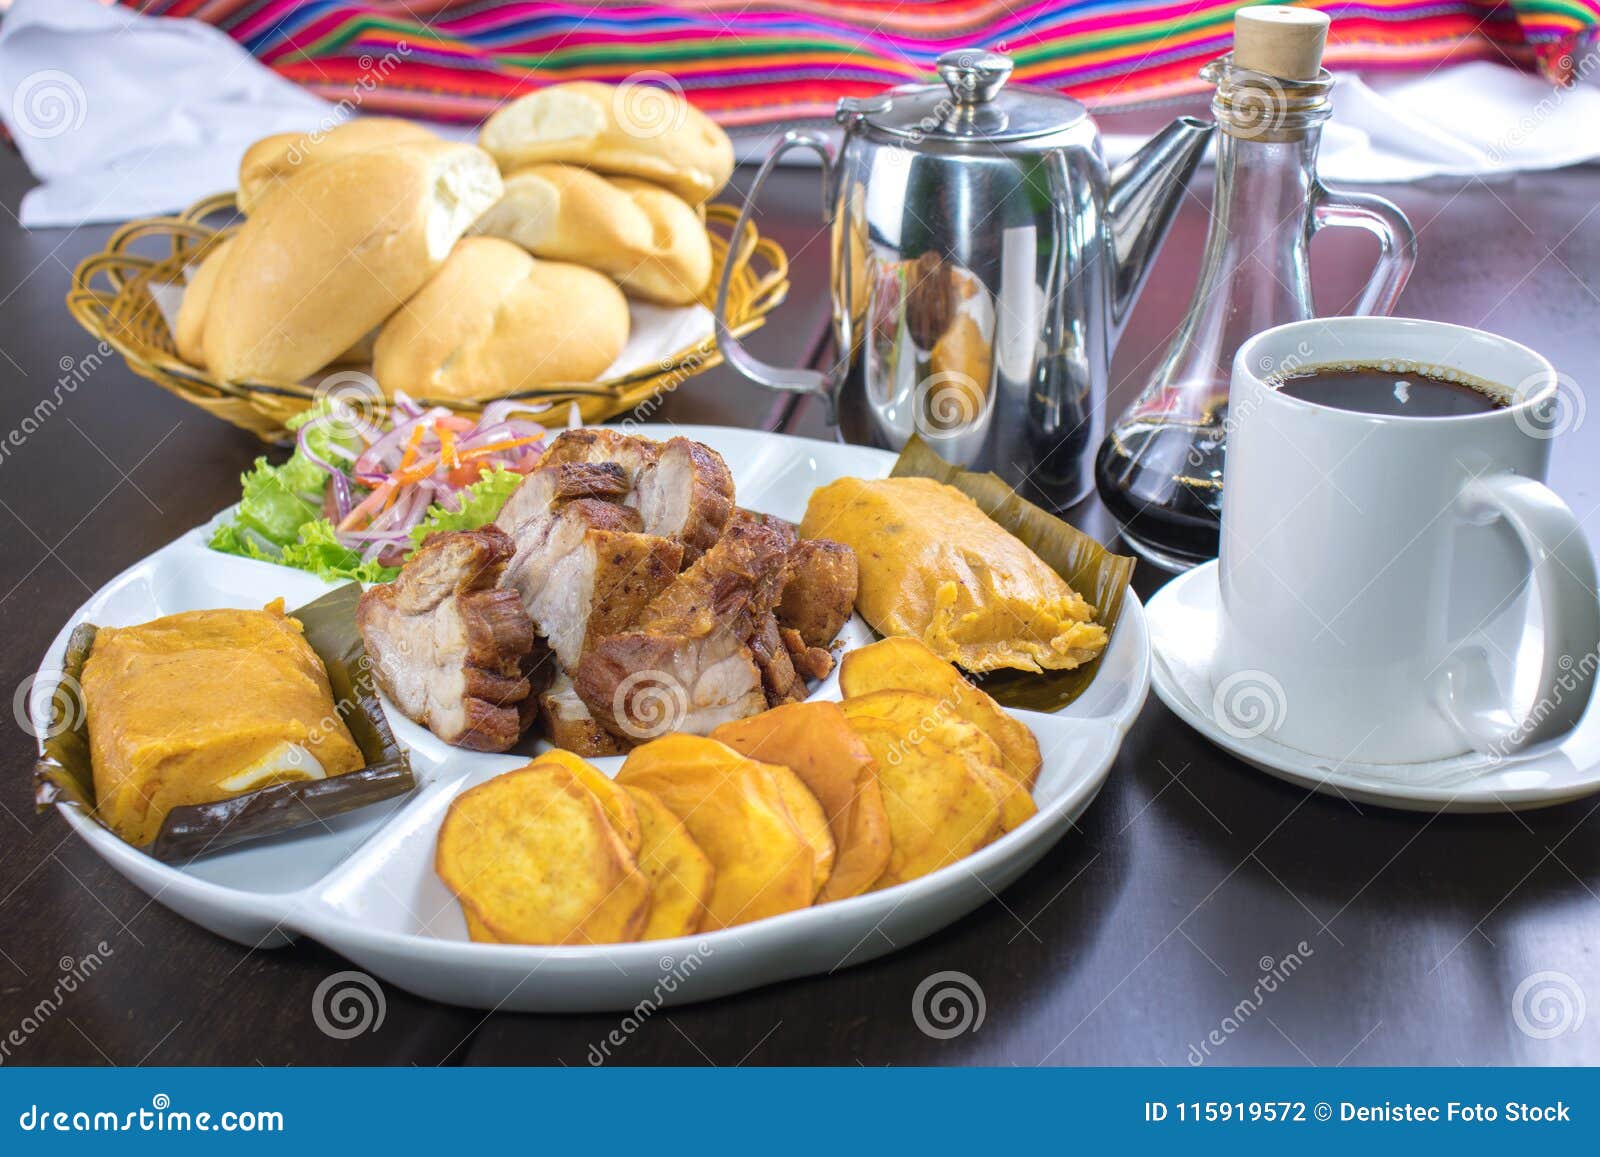 peruvian food: chicharrones, tamales, camote frito